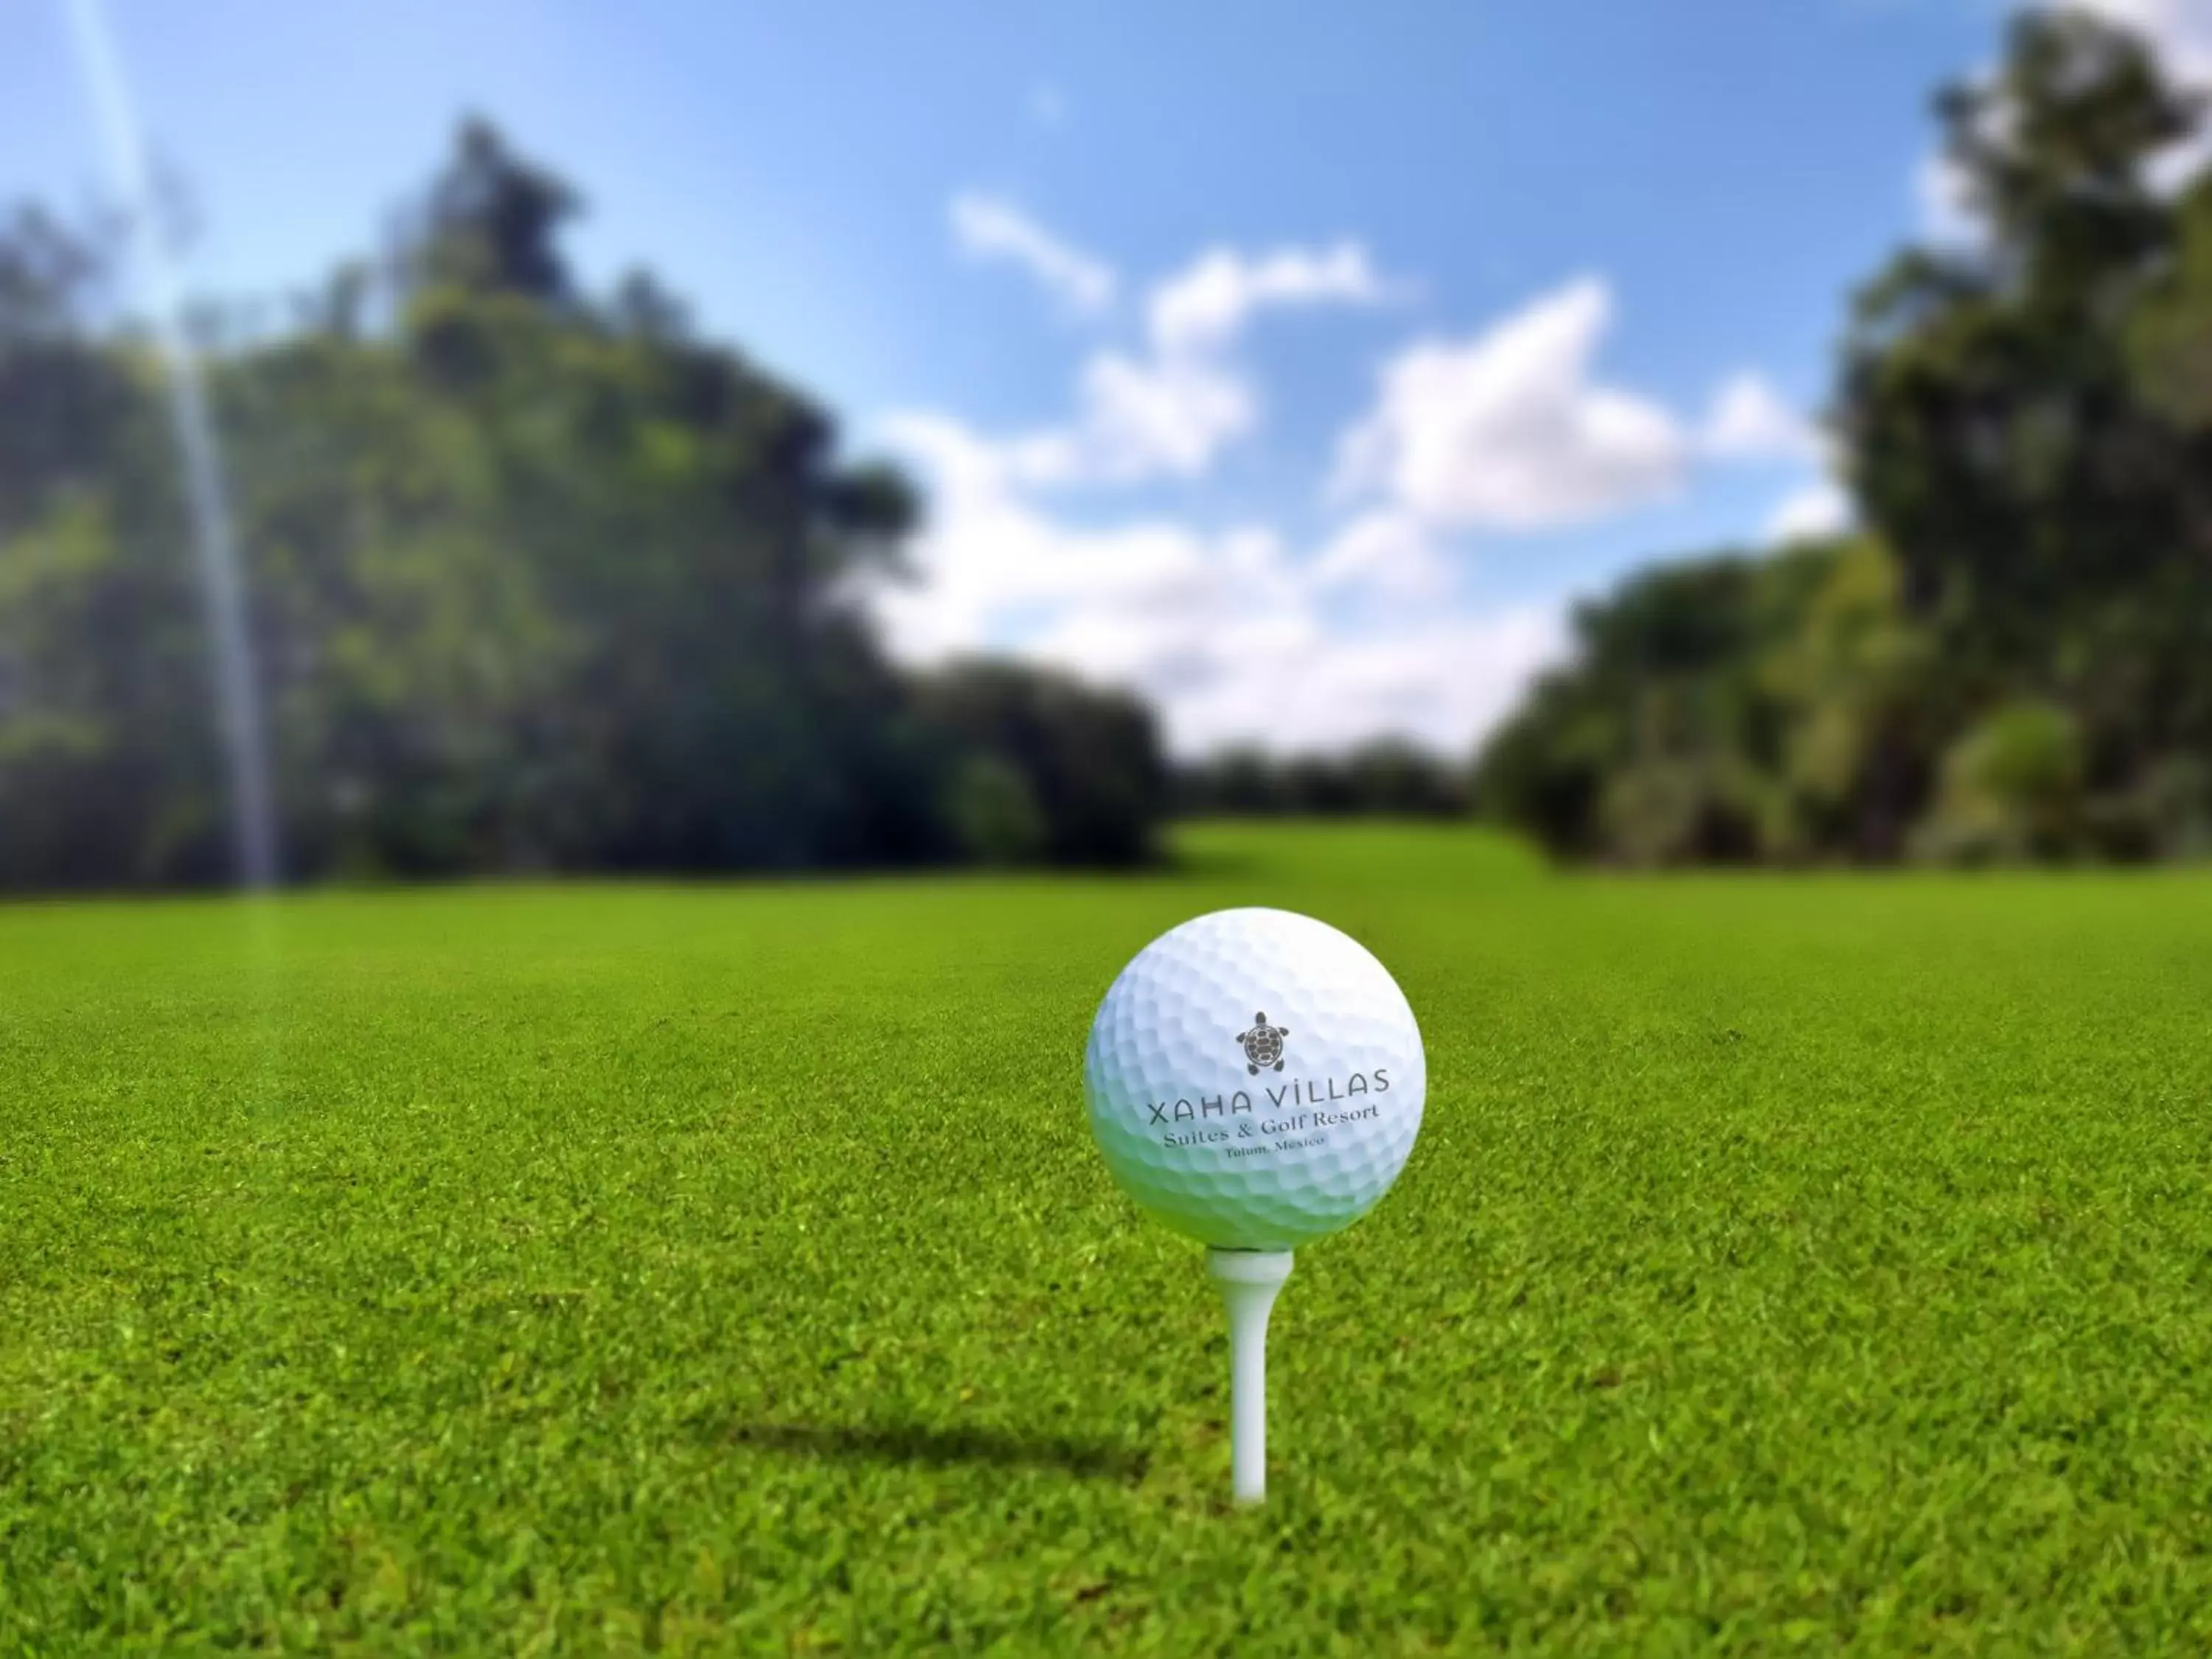 Activities, Golf in Xaha Villas Suites & Golf Resort